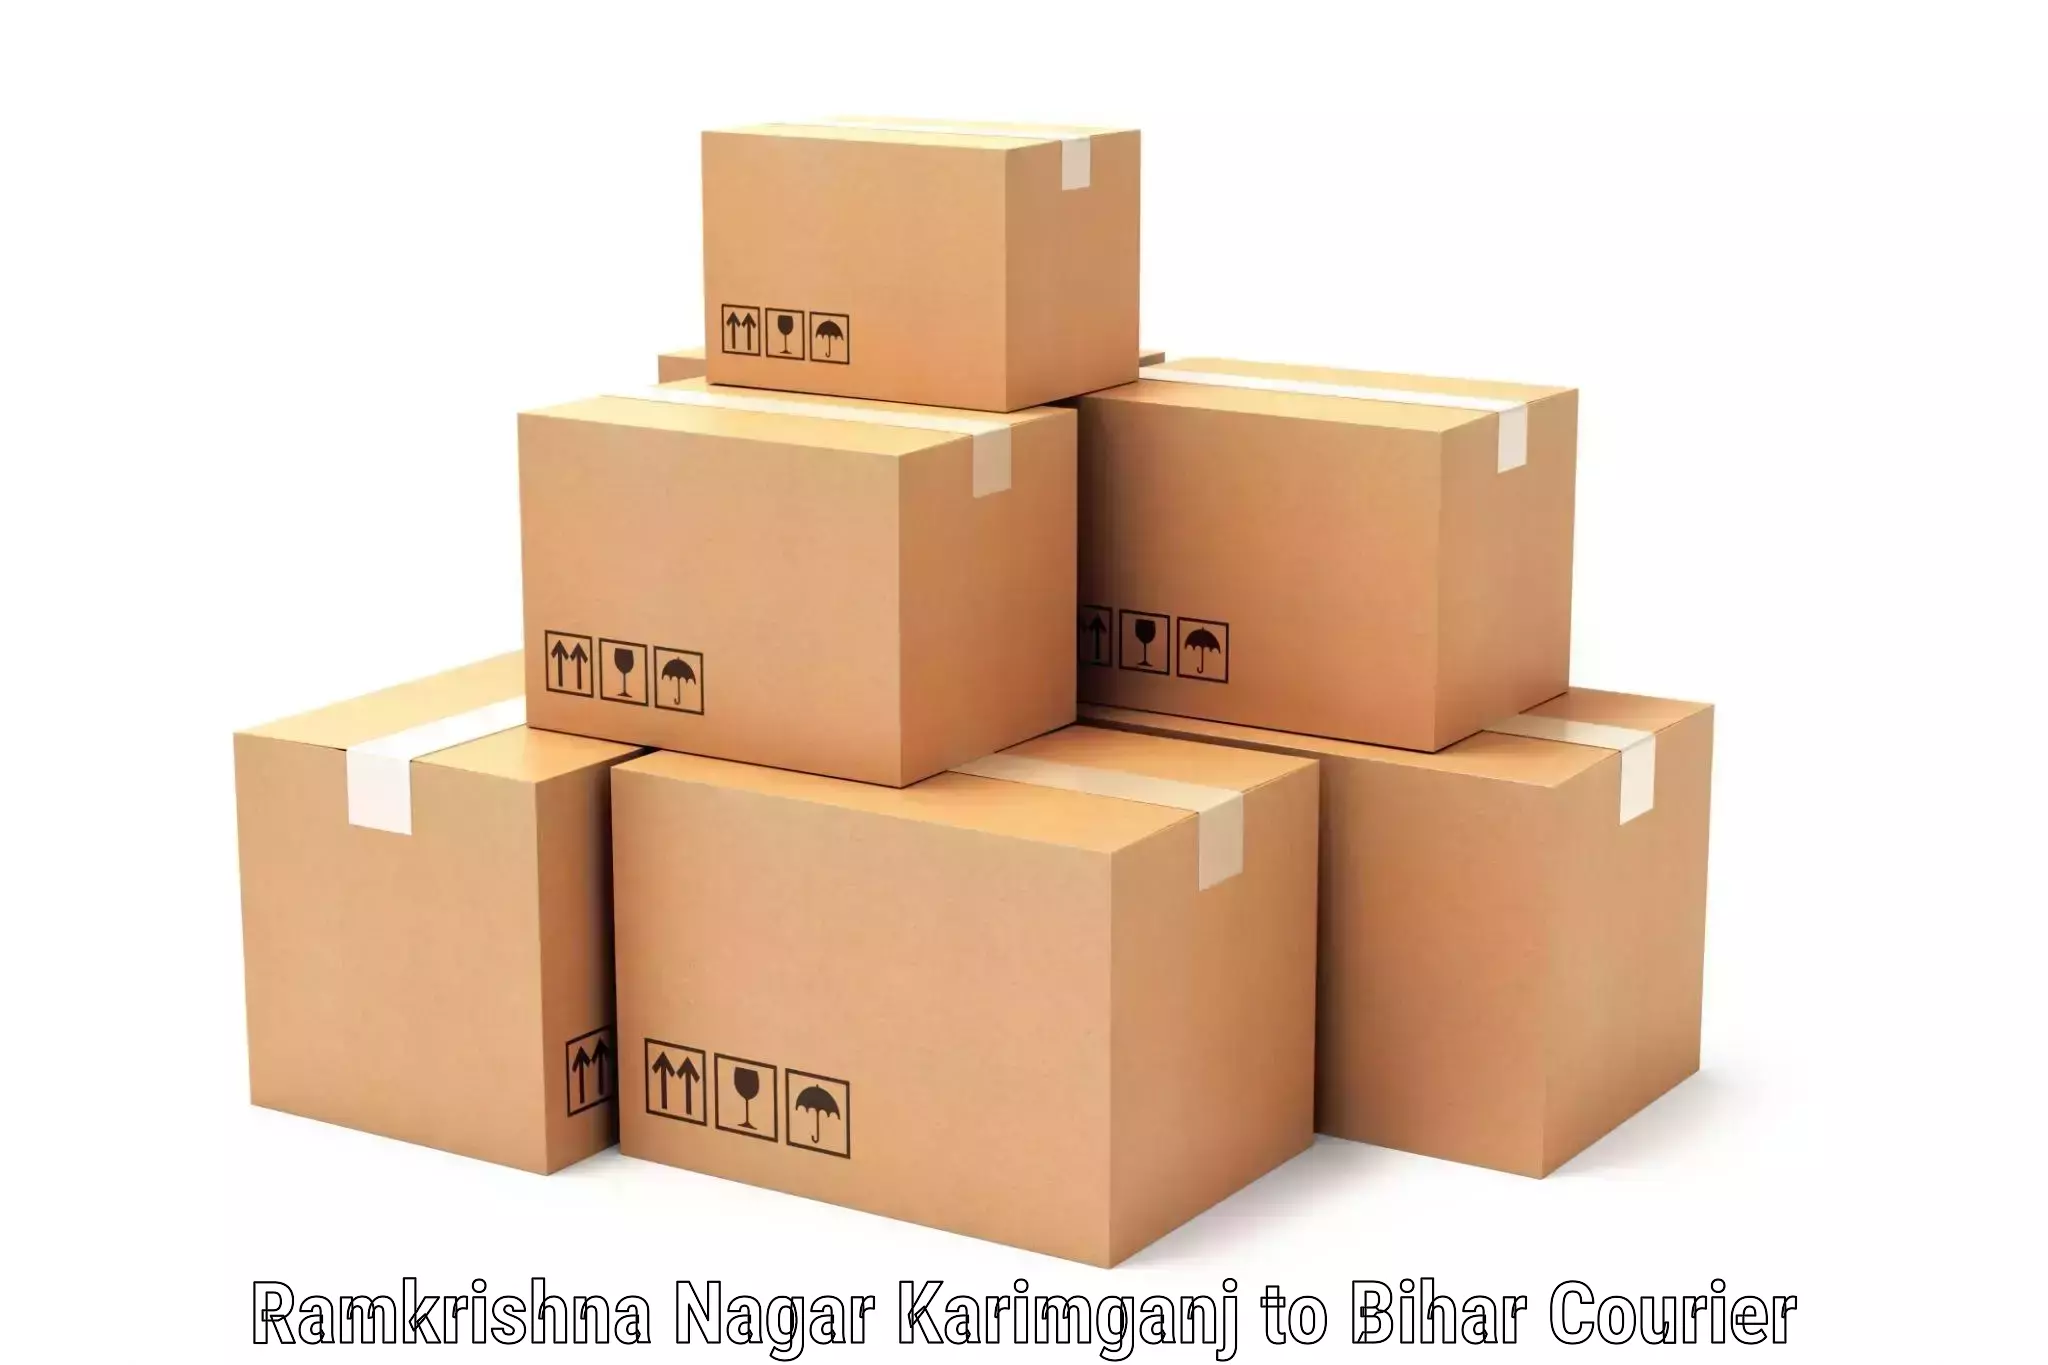 Cargo delivery service Ramkrishna Nagar Karimganj to Sonbarsa